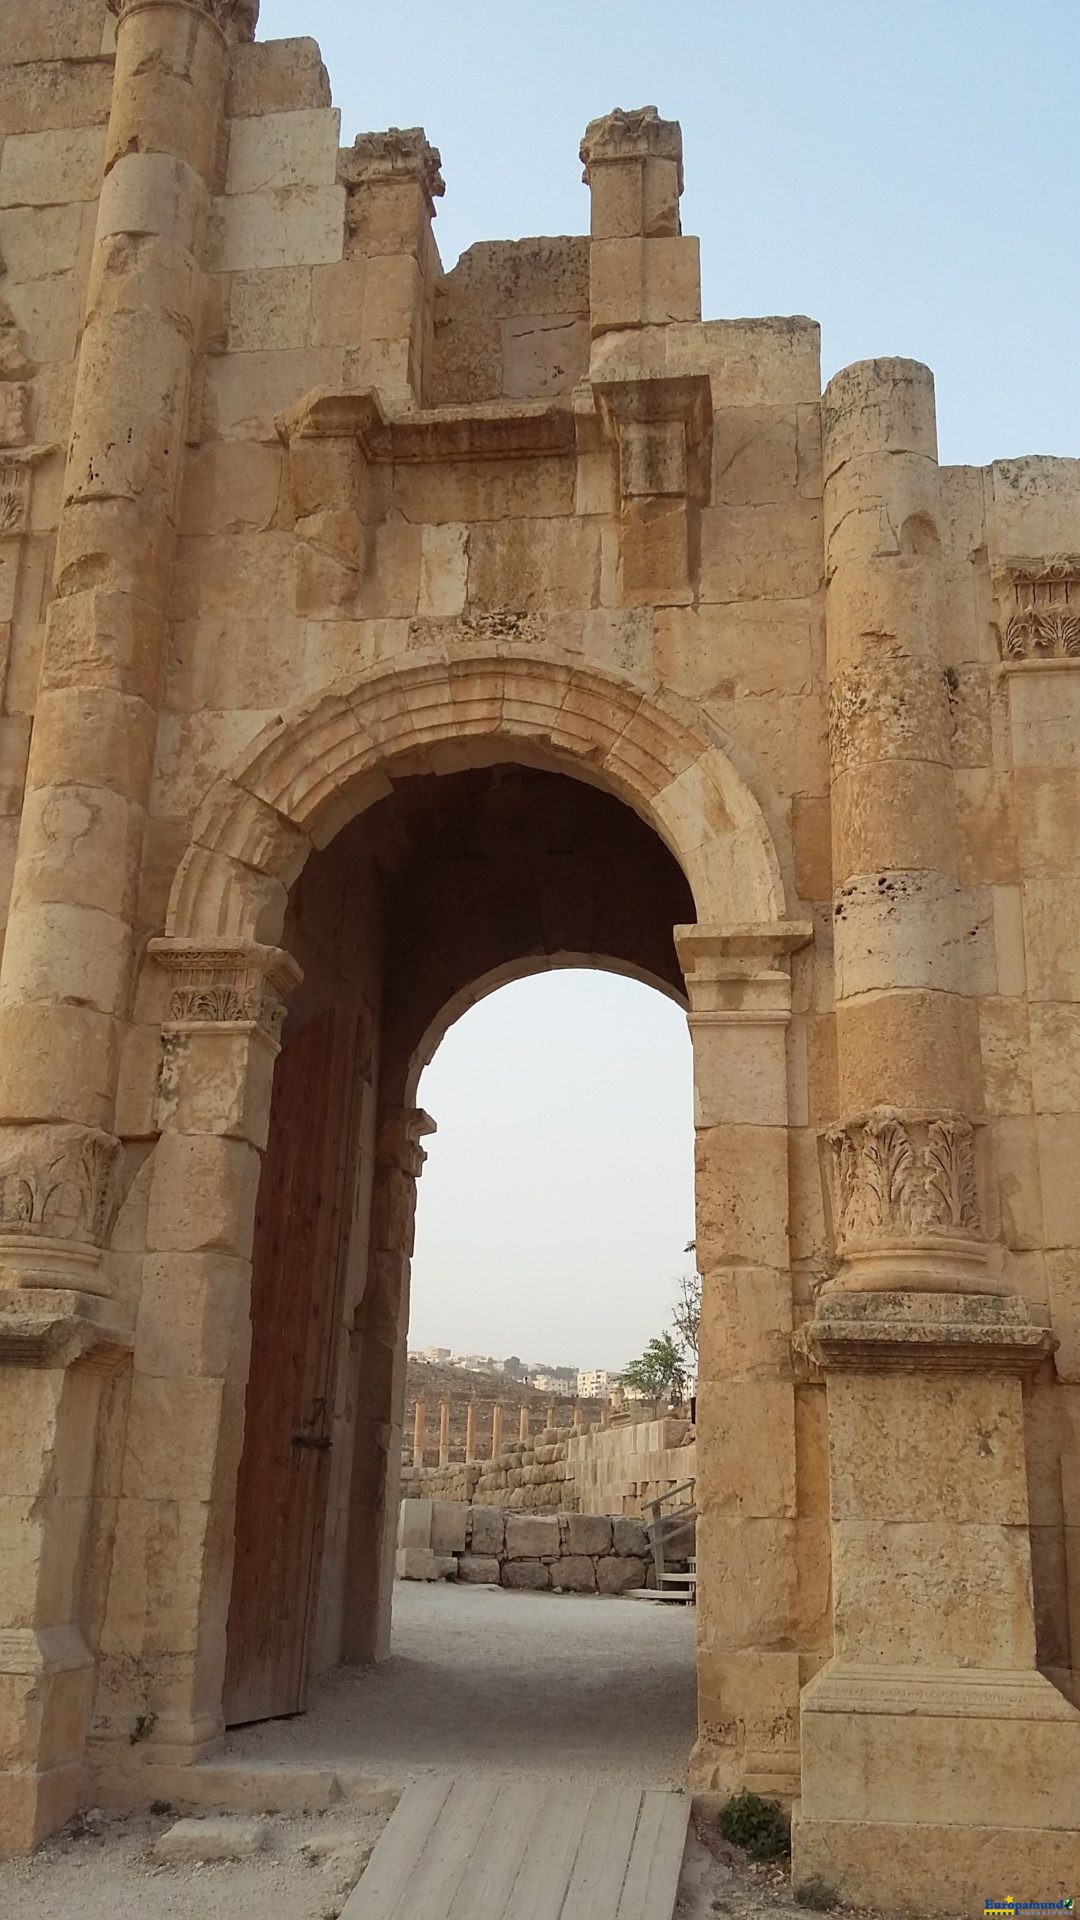 Otra vista del Arco de Adriano